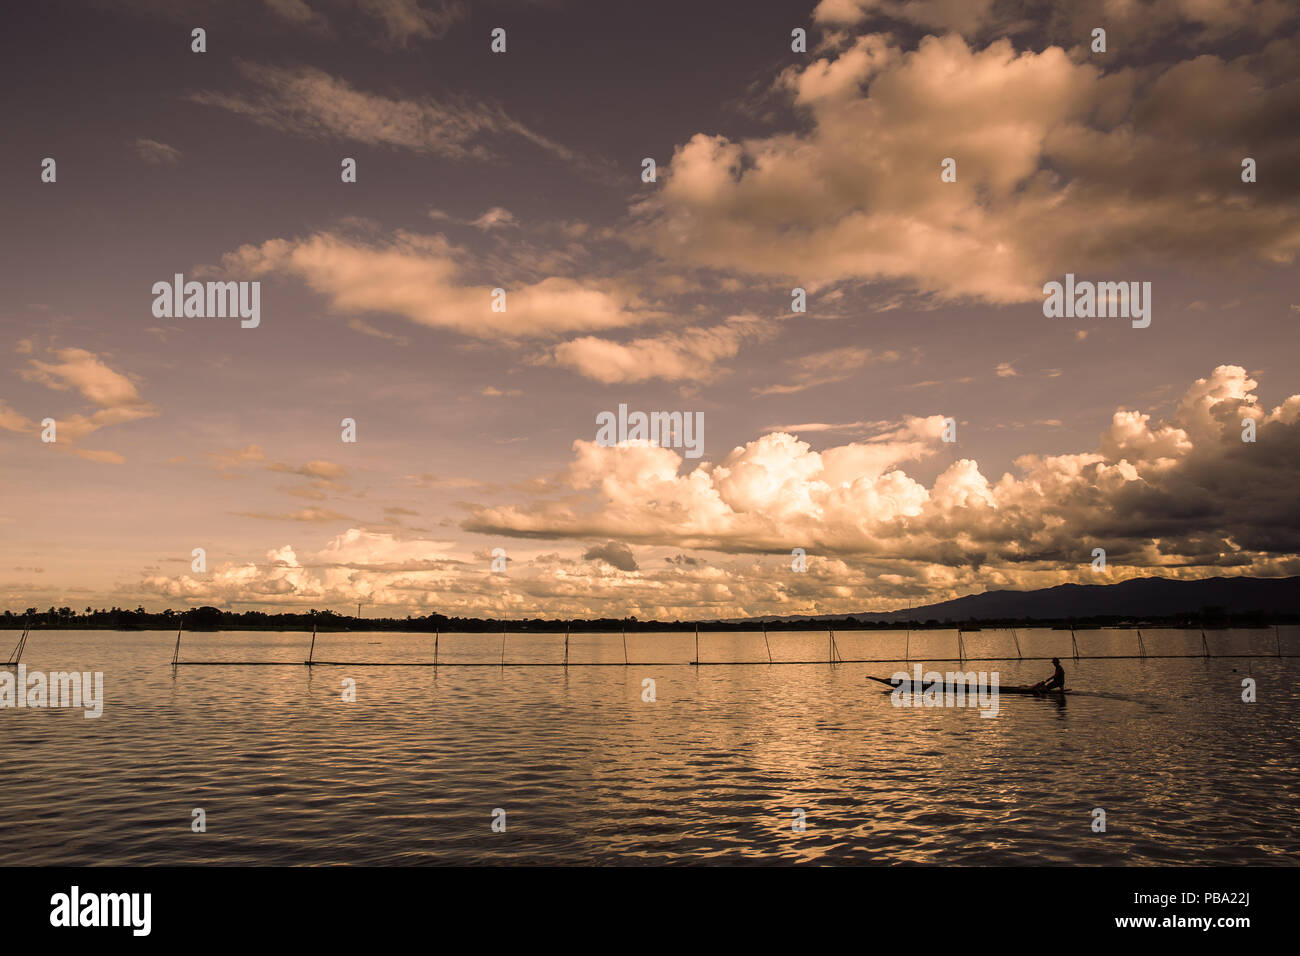 Ruhigen See Sonnenuntergang mit Silhouette Fischerboot warmen Ton Stockfoto